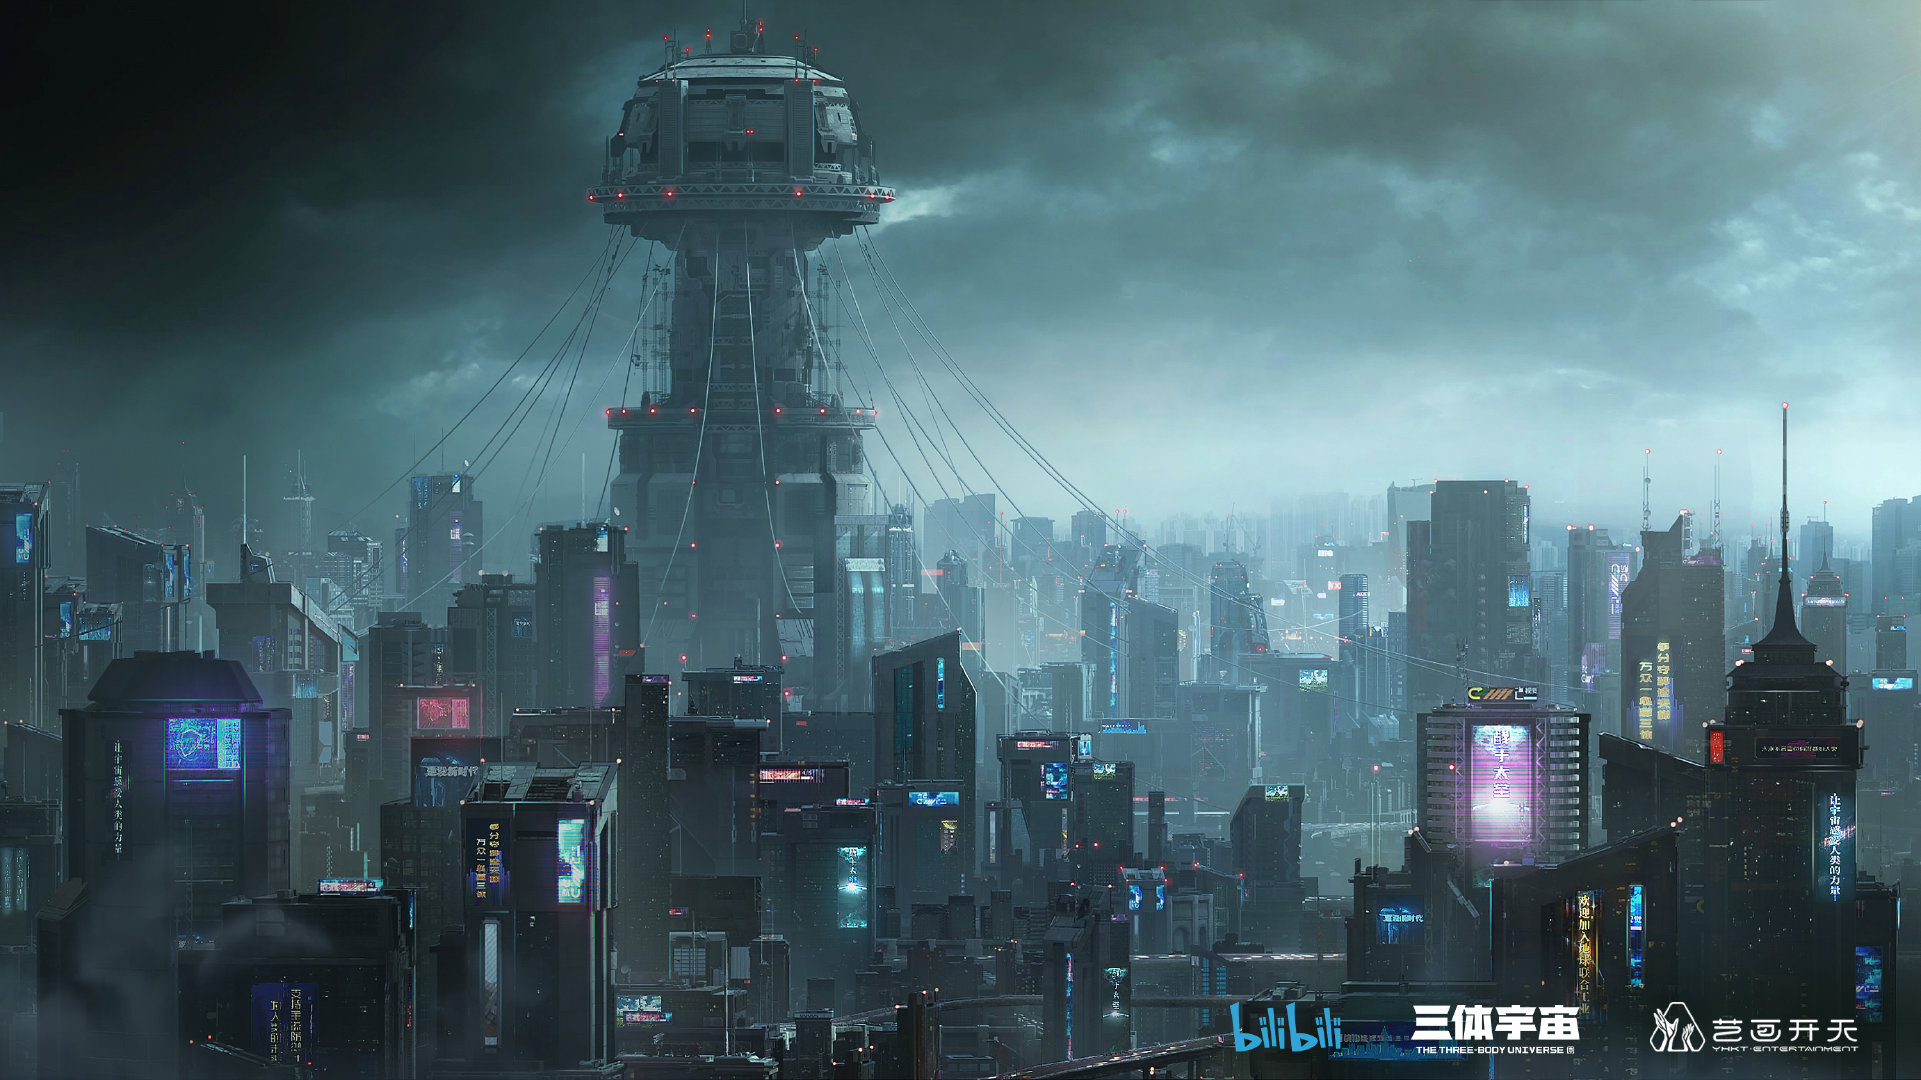 《三体》动画剧本开始收尾 讲述中国气质科幻故事